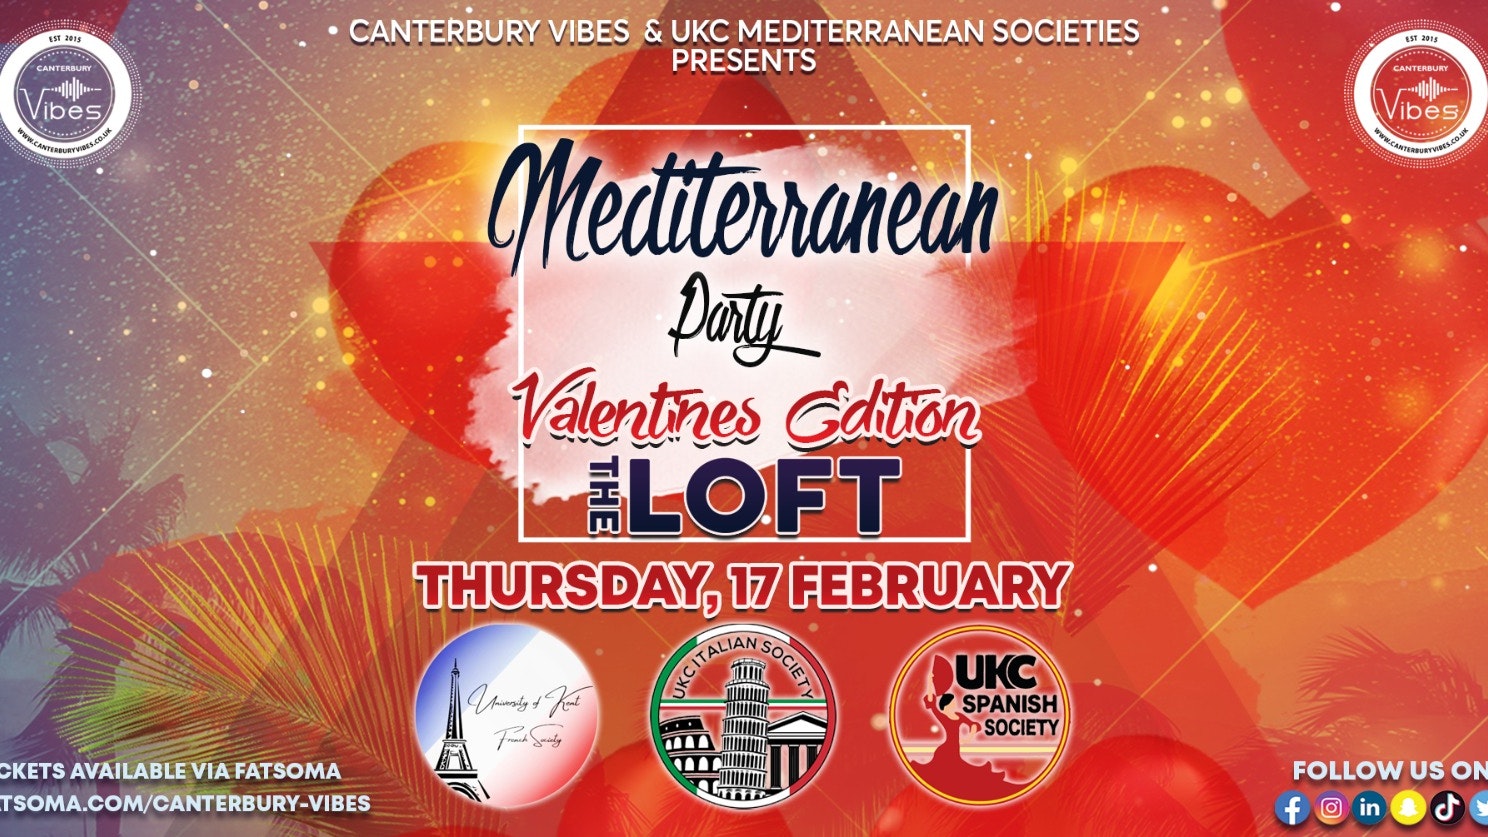 Mediterranean Party @ The Loft: Valentine’s Edition